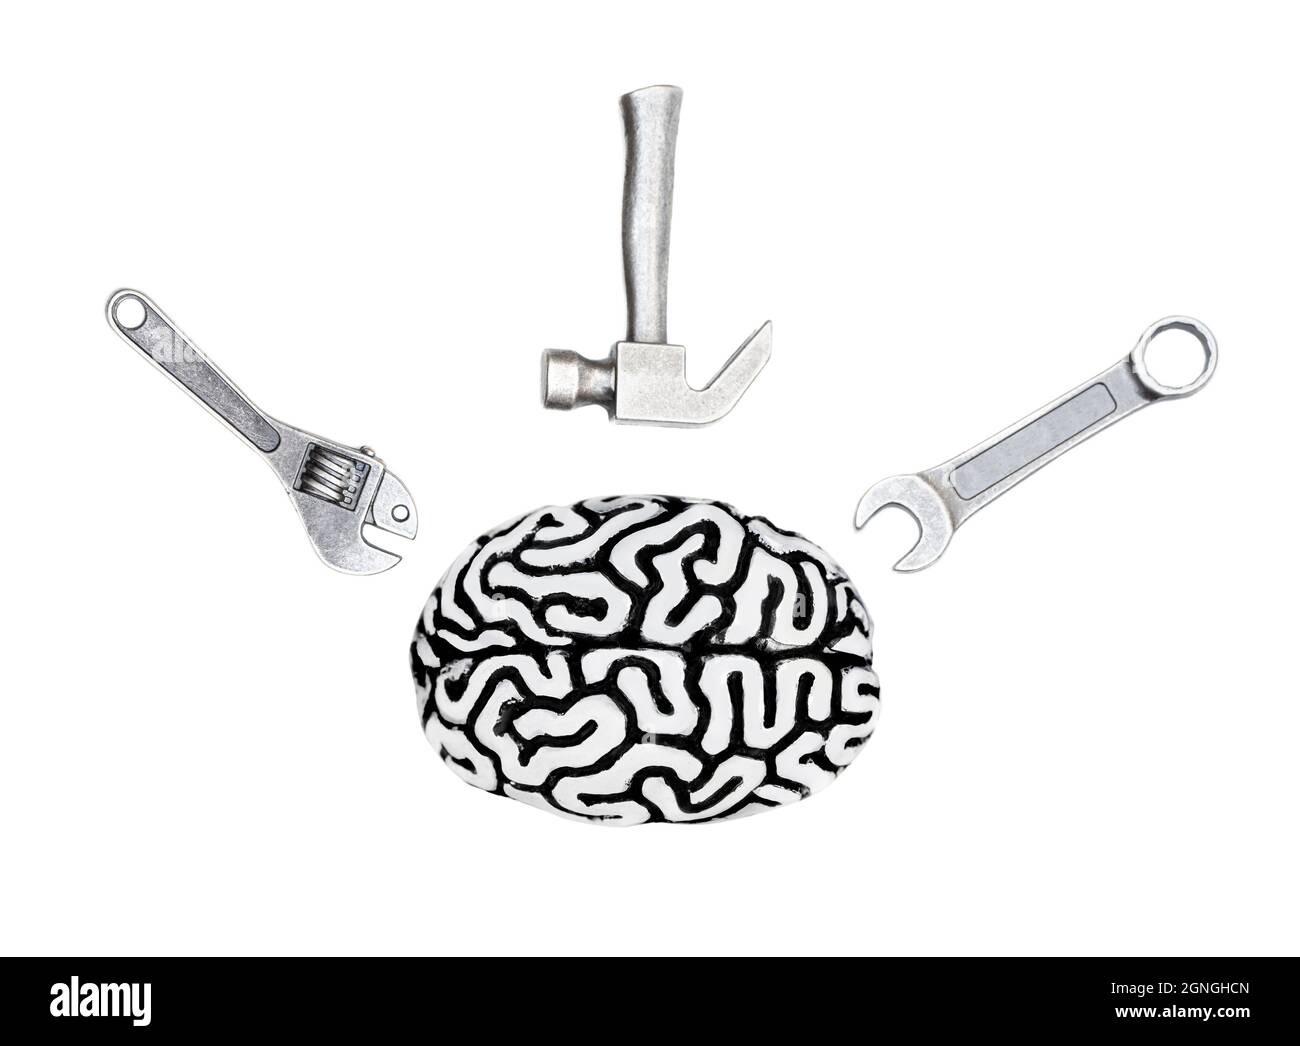 Vue de dessus d'un modèle de cerveau humain avec un kit d'outils à main isolés sur blanc. Concept d'outils créatifs de récupération du cerveau. Banque D'Images